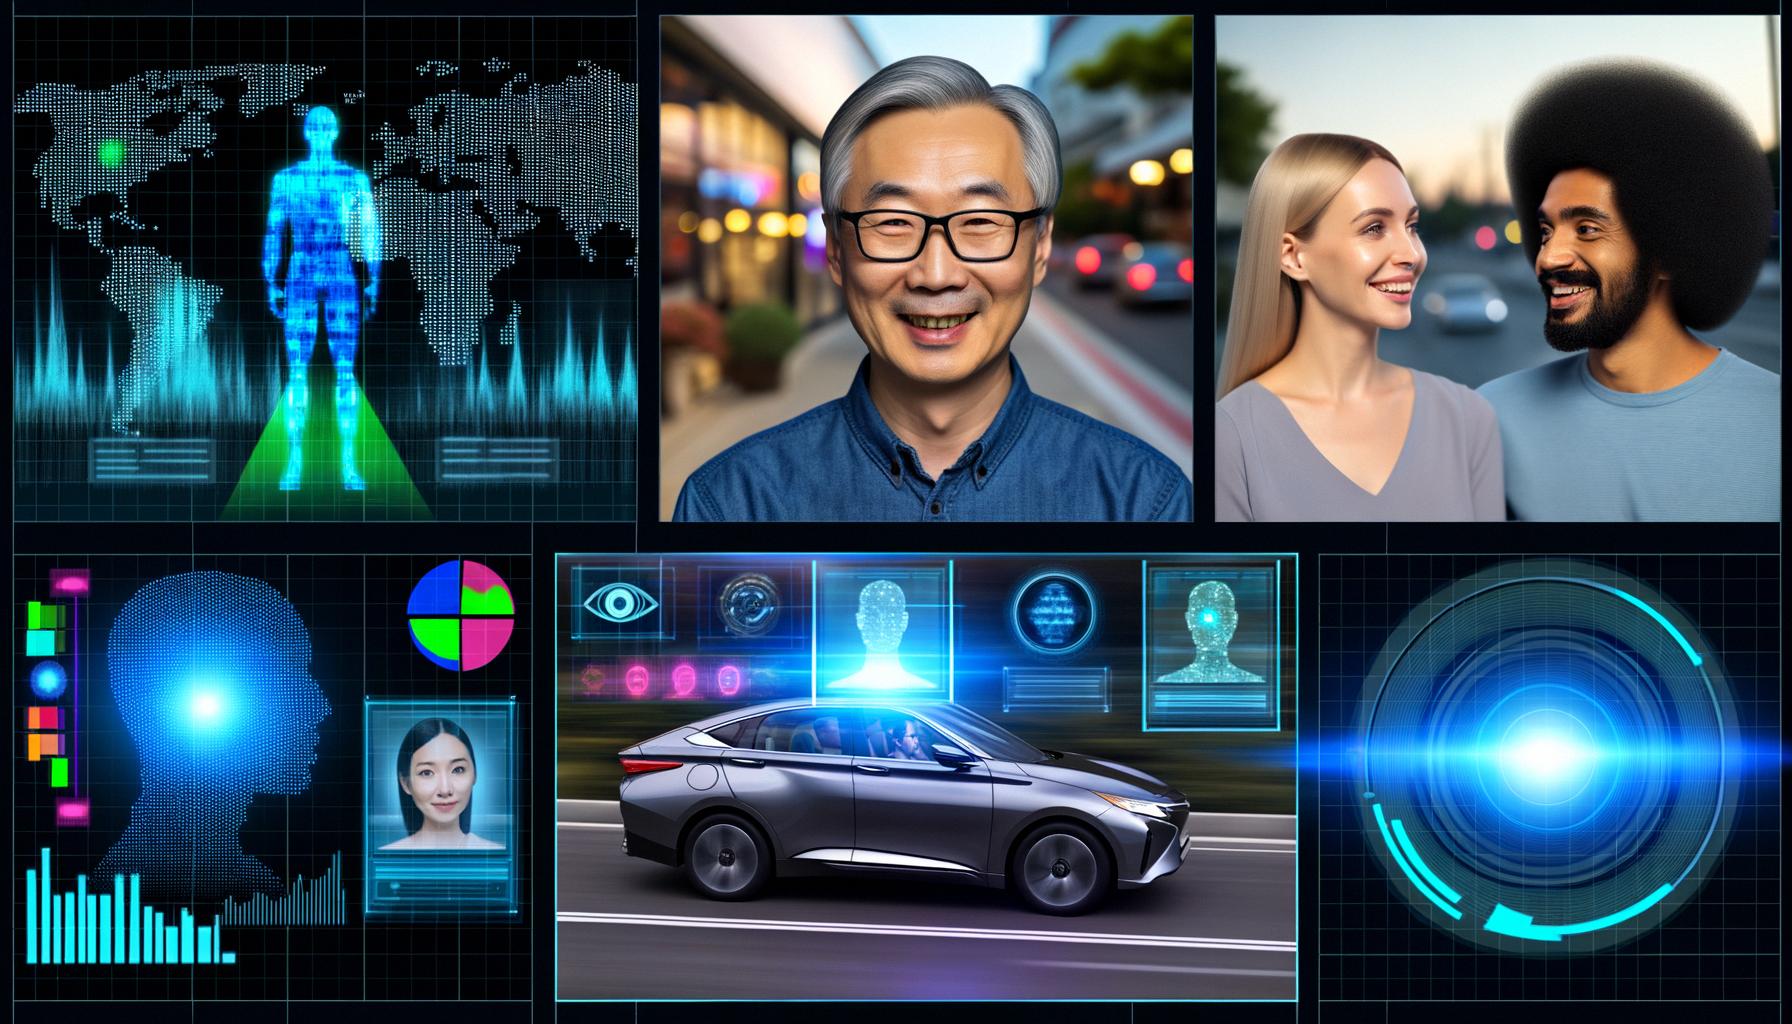 AI is advancing across surveillance, autonomous driving, and emotion detection